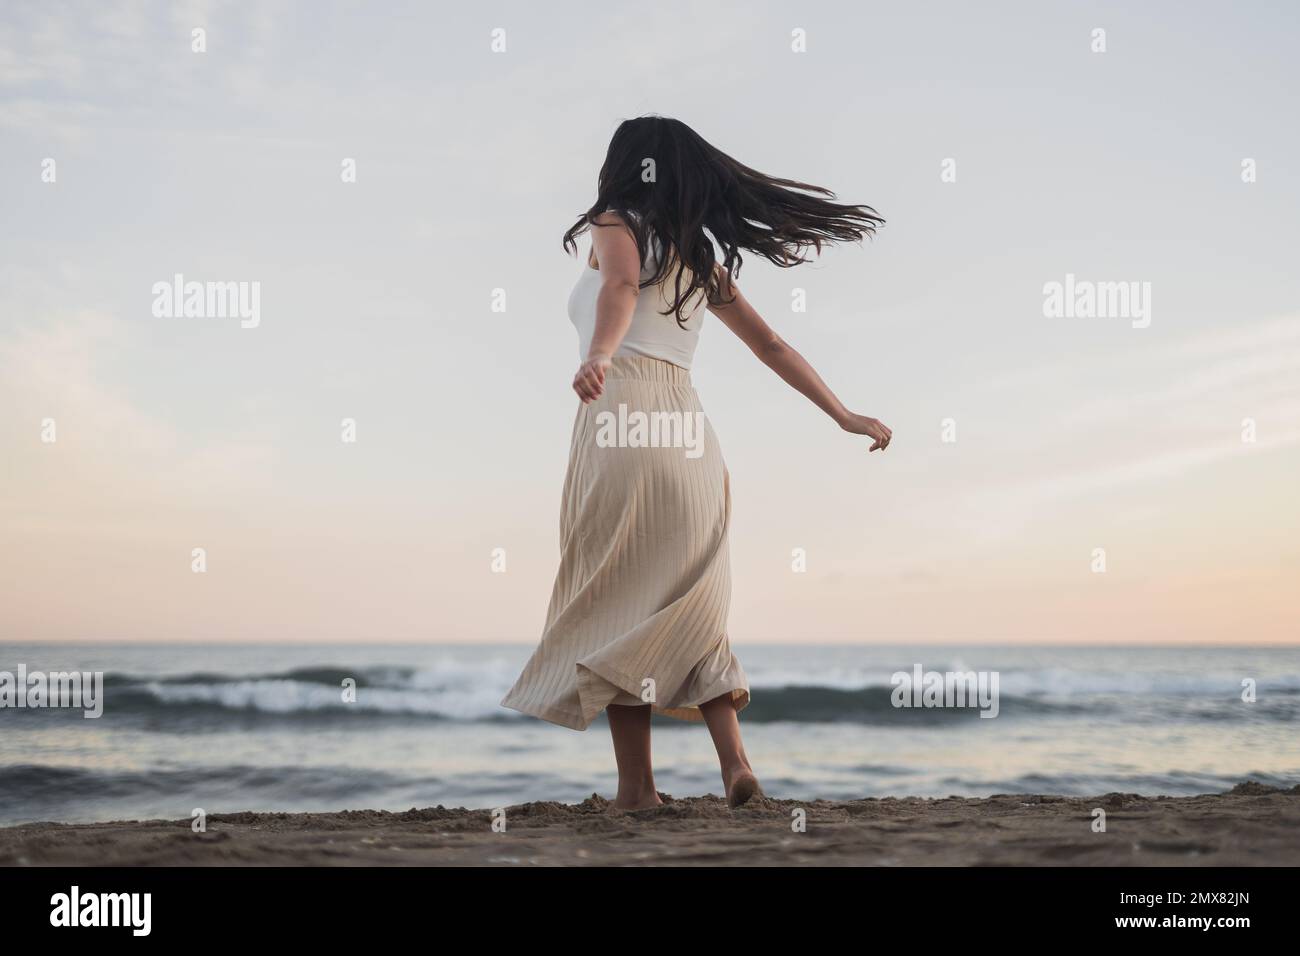 Vue arrière de jeune femme malin et méconnaissable, avec de longs cheveux sombres dans des vêtements d'été dansant sur une plage de sable, près de la poulamière Banque D'Images